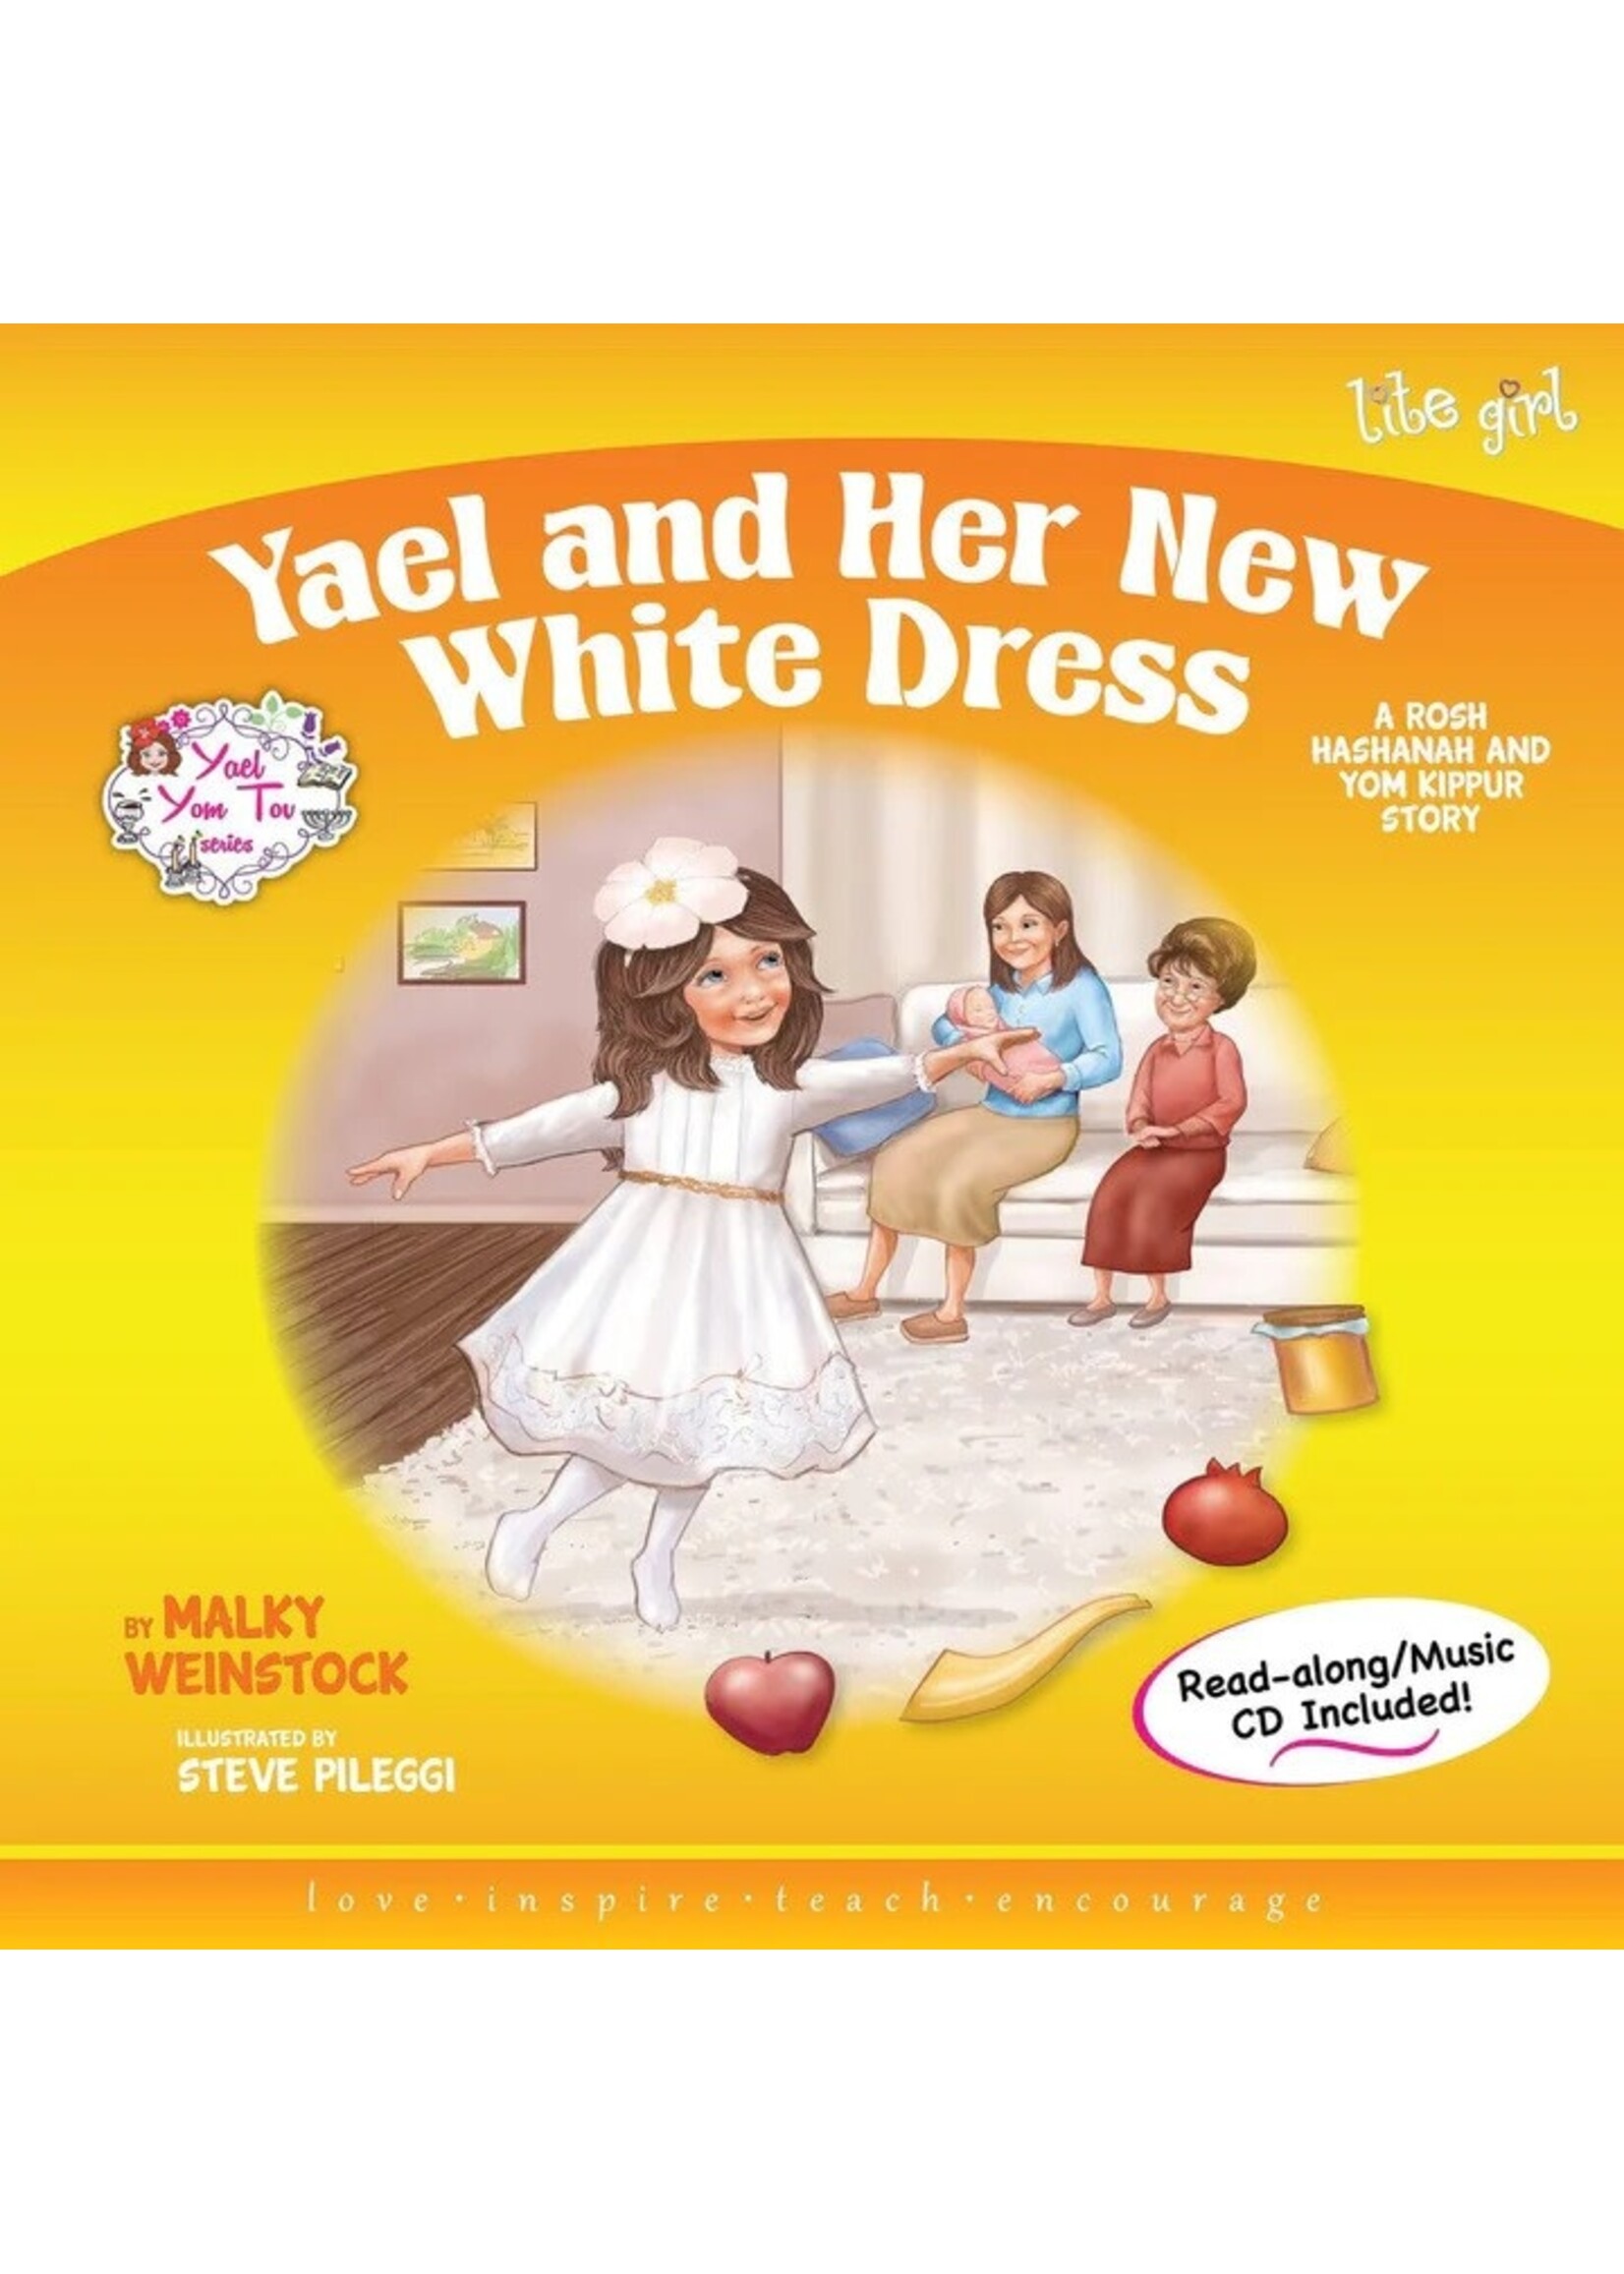 YAEL AND HER NEW WHITE DRESS